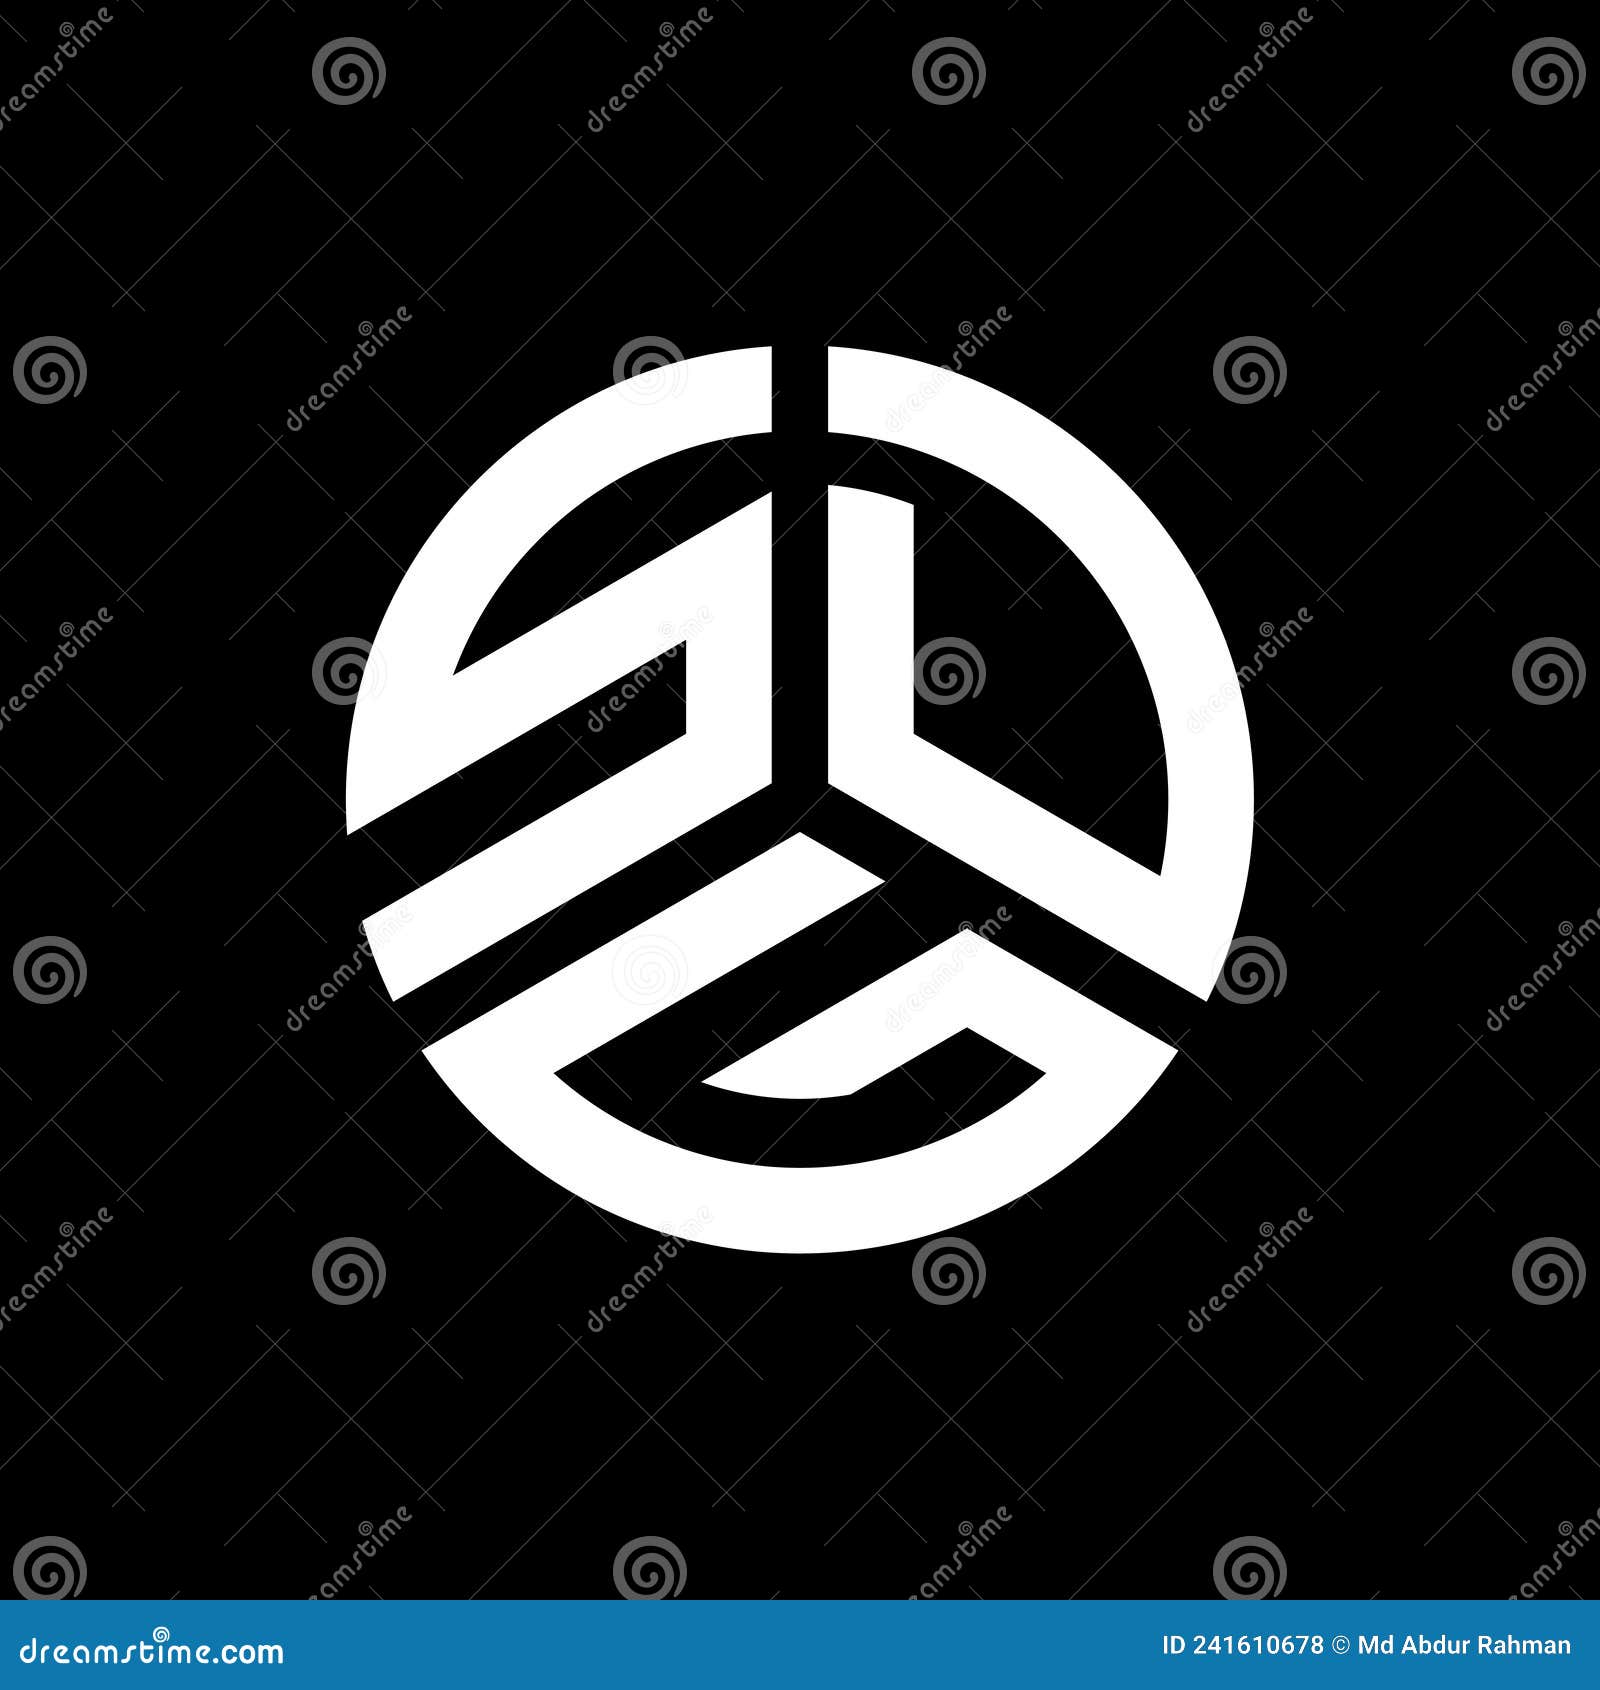 SDG Letter Logo Design on Black Background. SDG Creative Initials ...